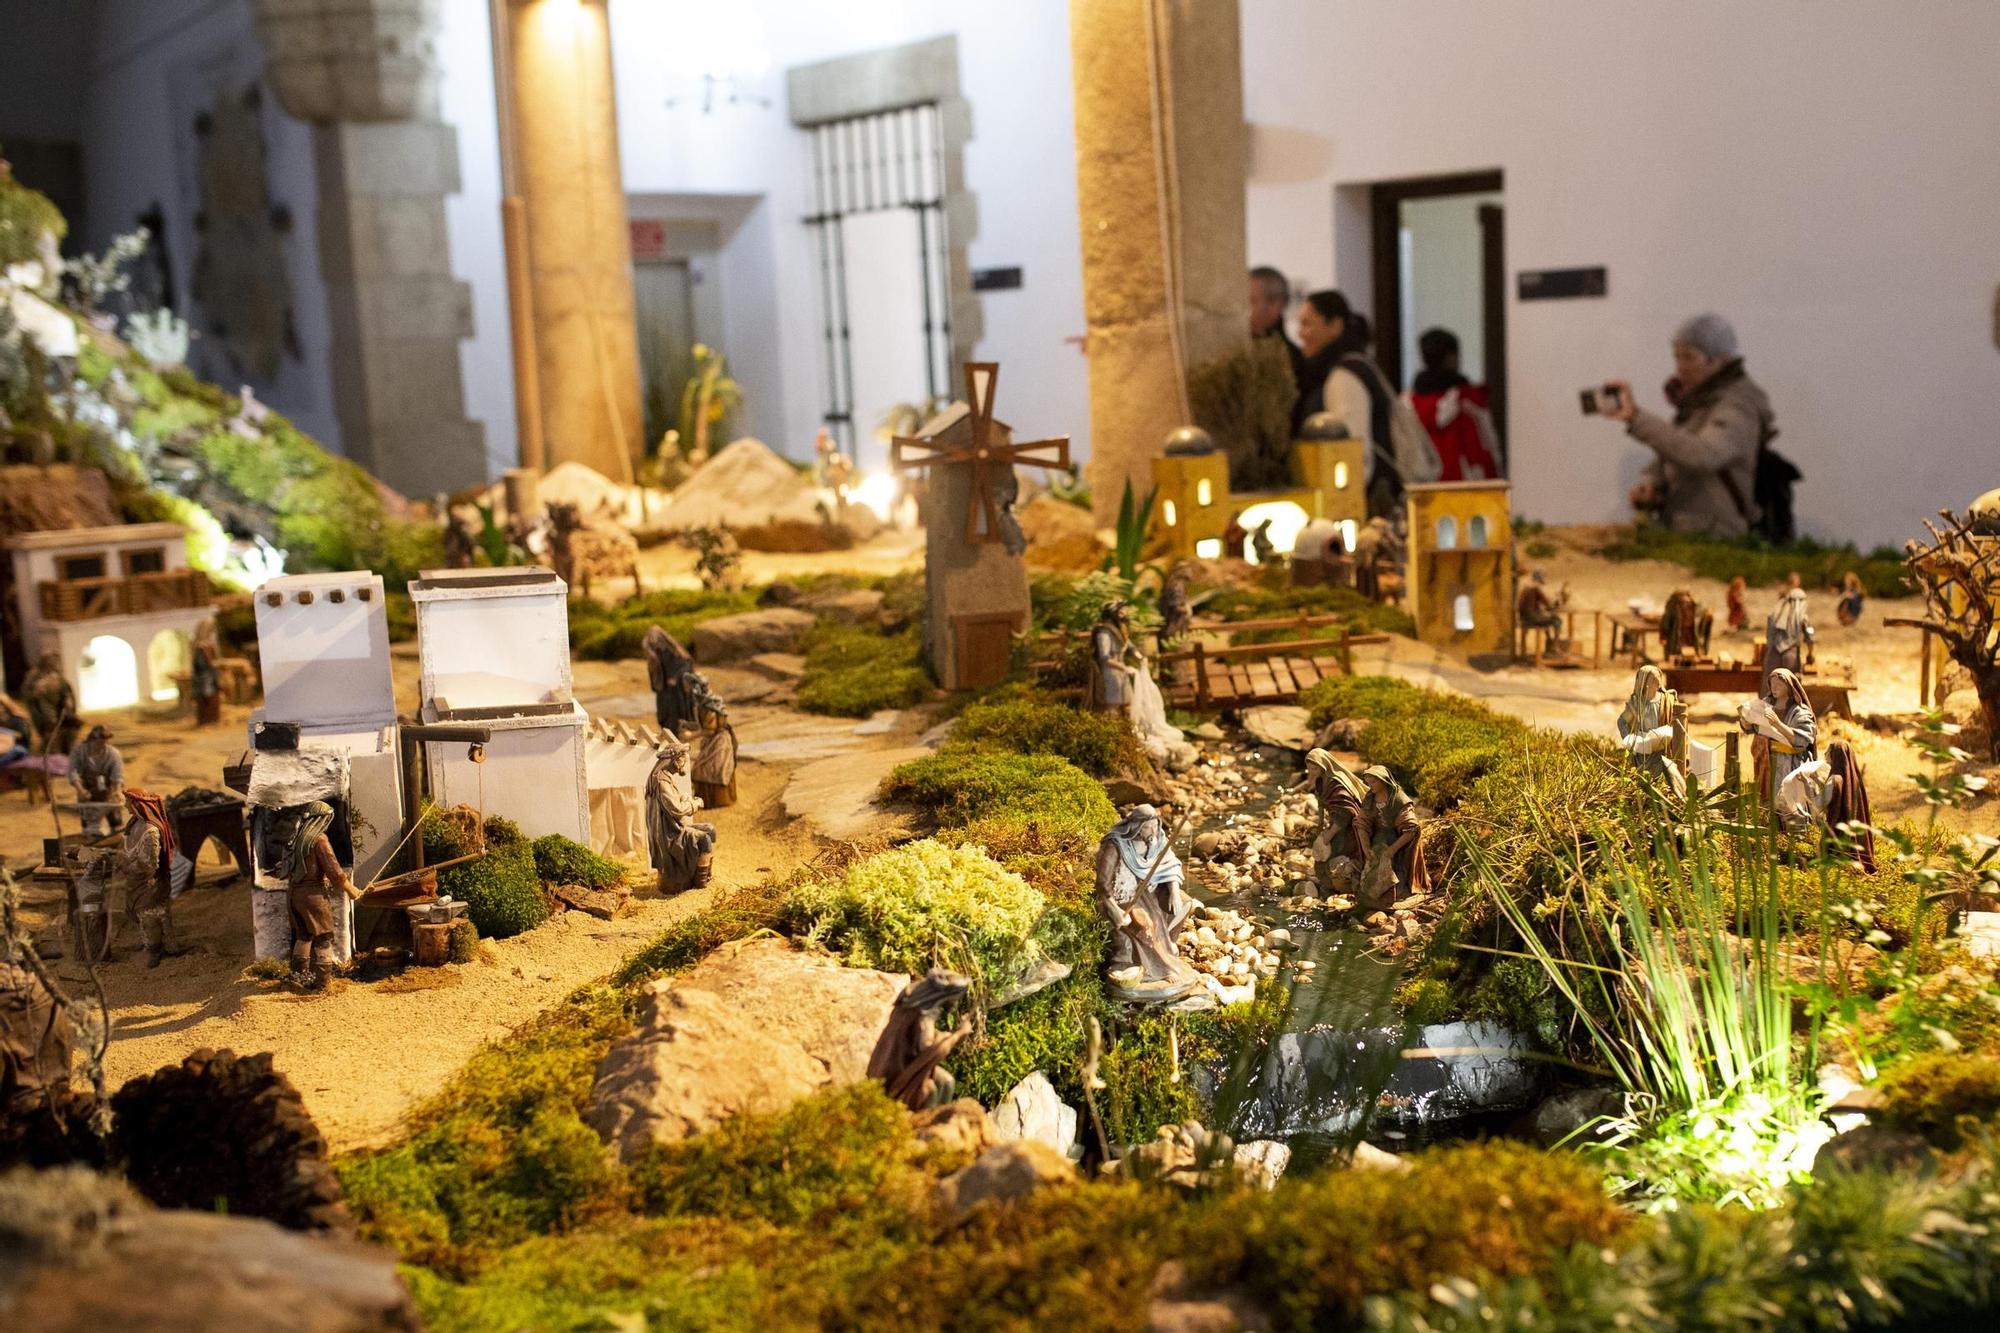 Galería | Más de 300 figuras, incluida una Carantoña, componen el belén de la Diputación de Cáceres